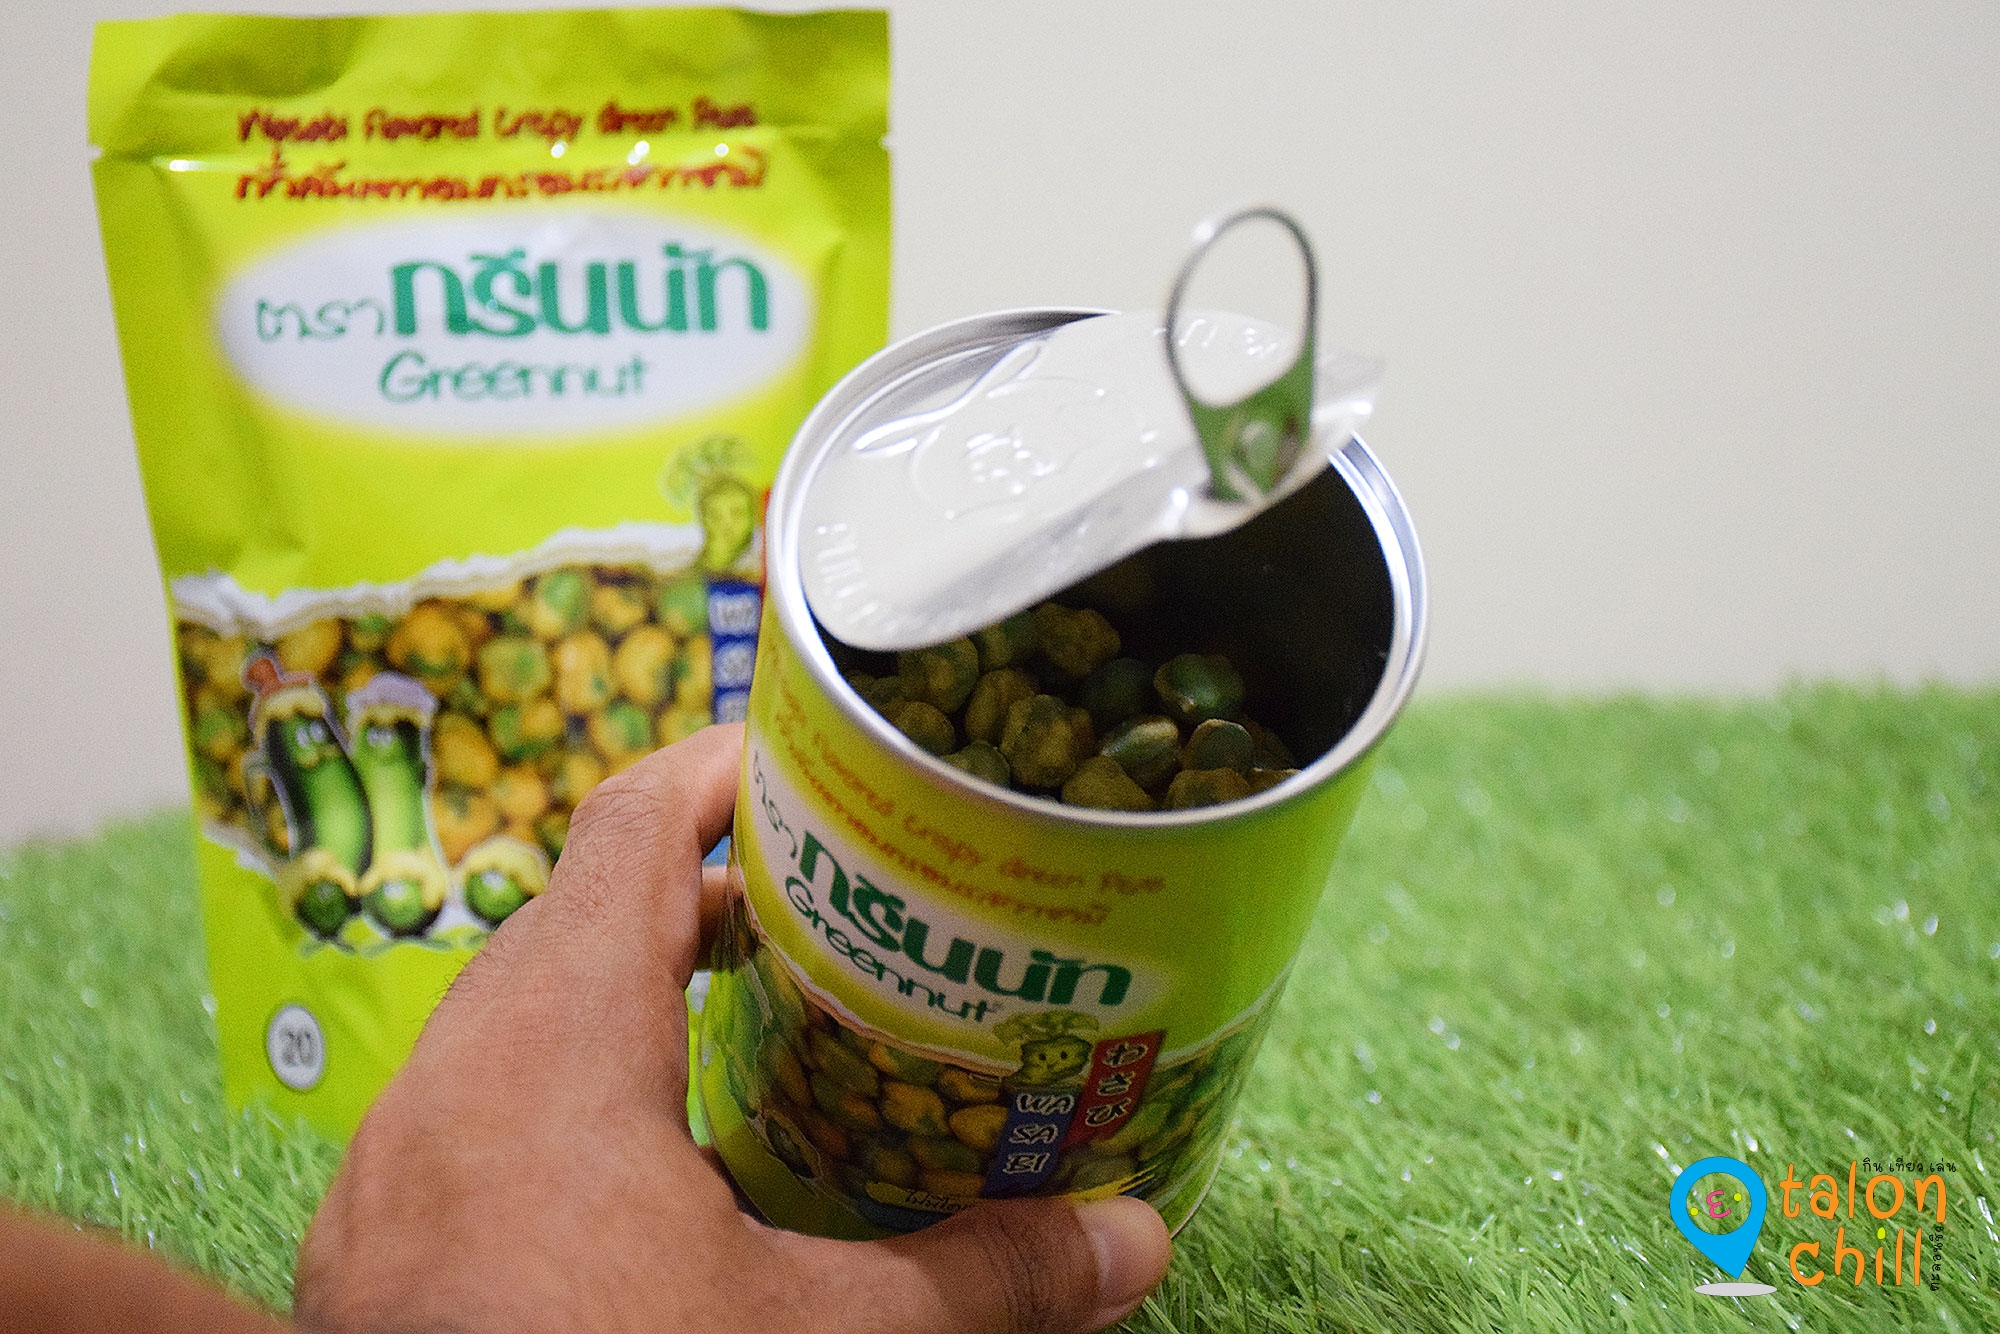 [แกะขนมรีวิว] Greennut ถั่วลันเตาอบกรอบ และเม็ดมะม่วงหิมพานต์ (Healthy Trendy Snack) จากกรีนนัท